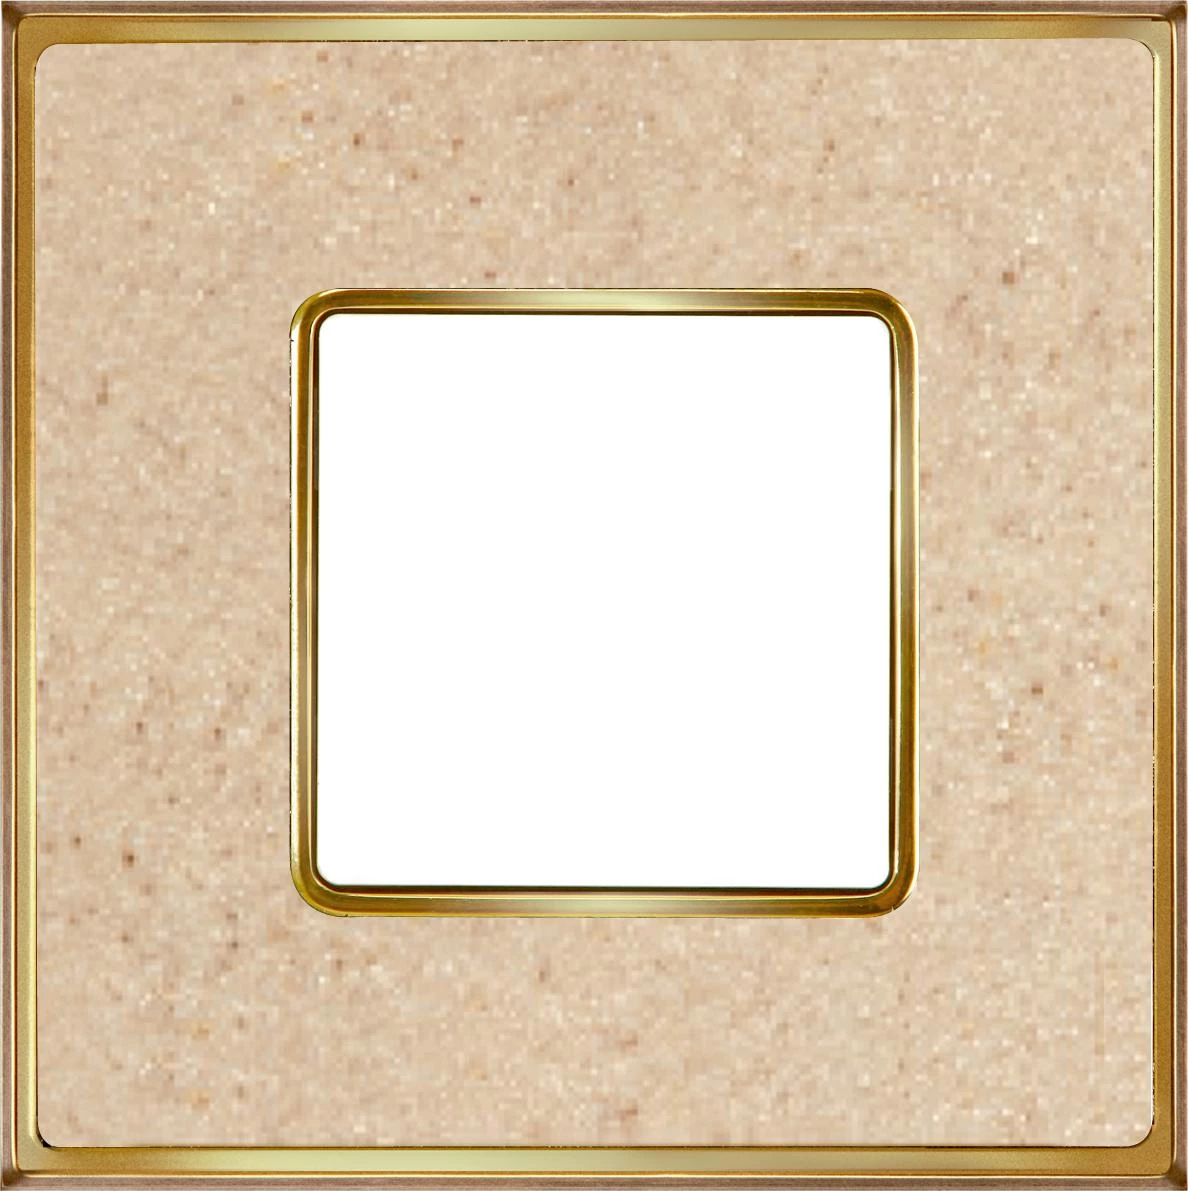  артикул FD01331AMOB название Рамка одинарная, цвет Светлый кориан/Светлое золото, VINTAGE CORINTO, Fede